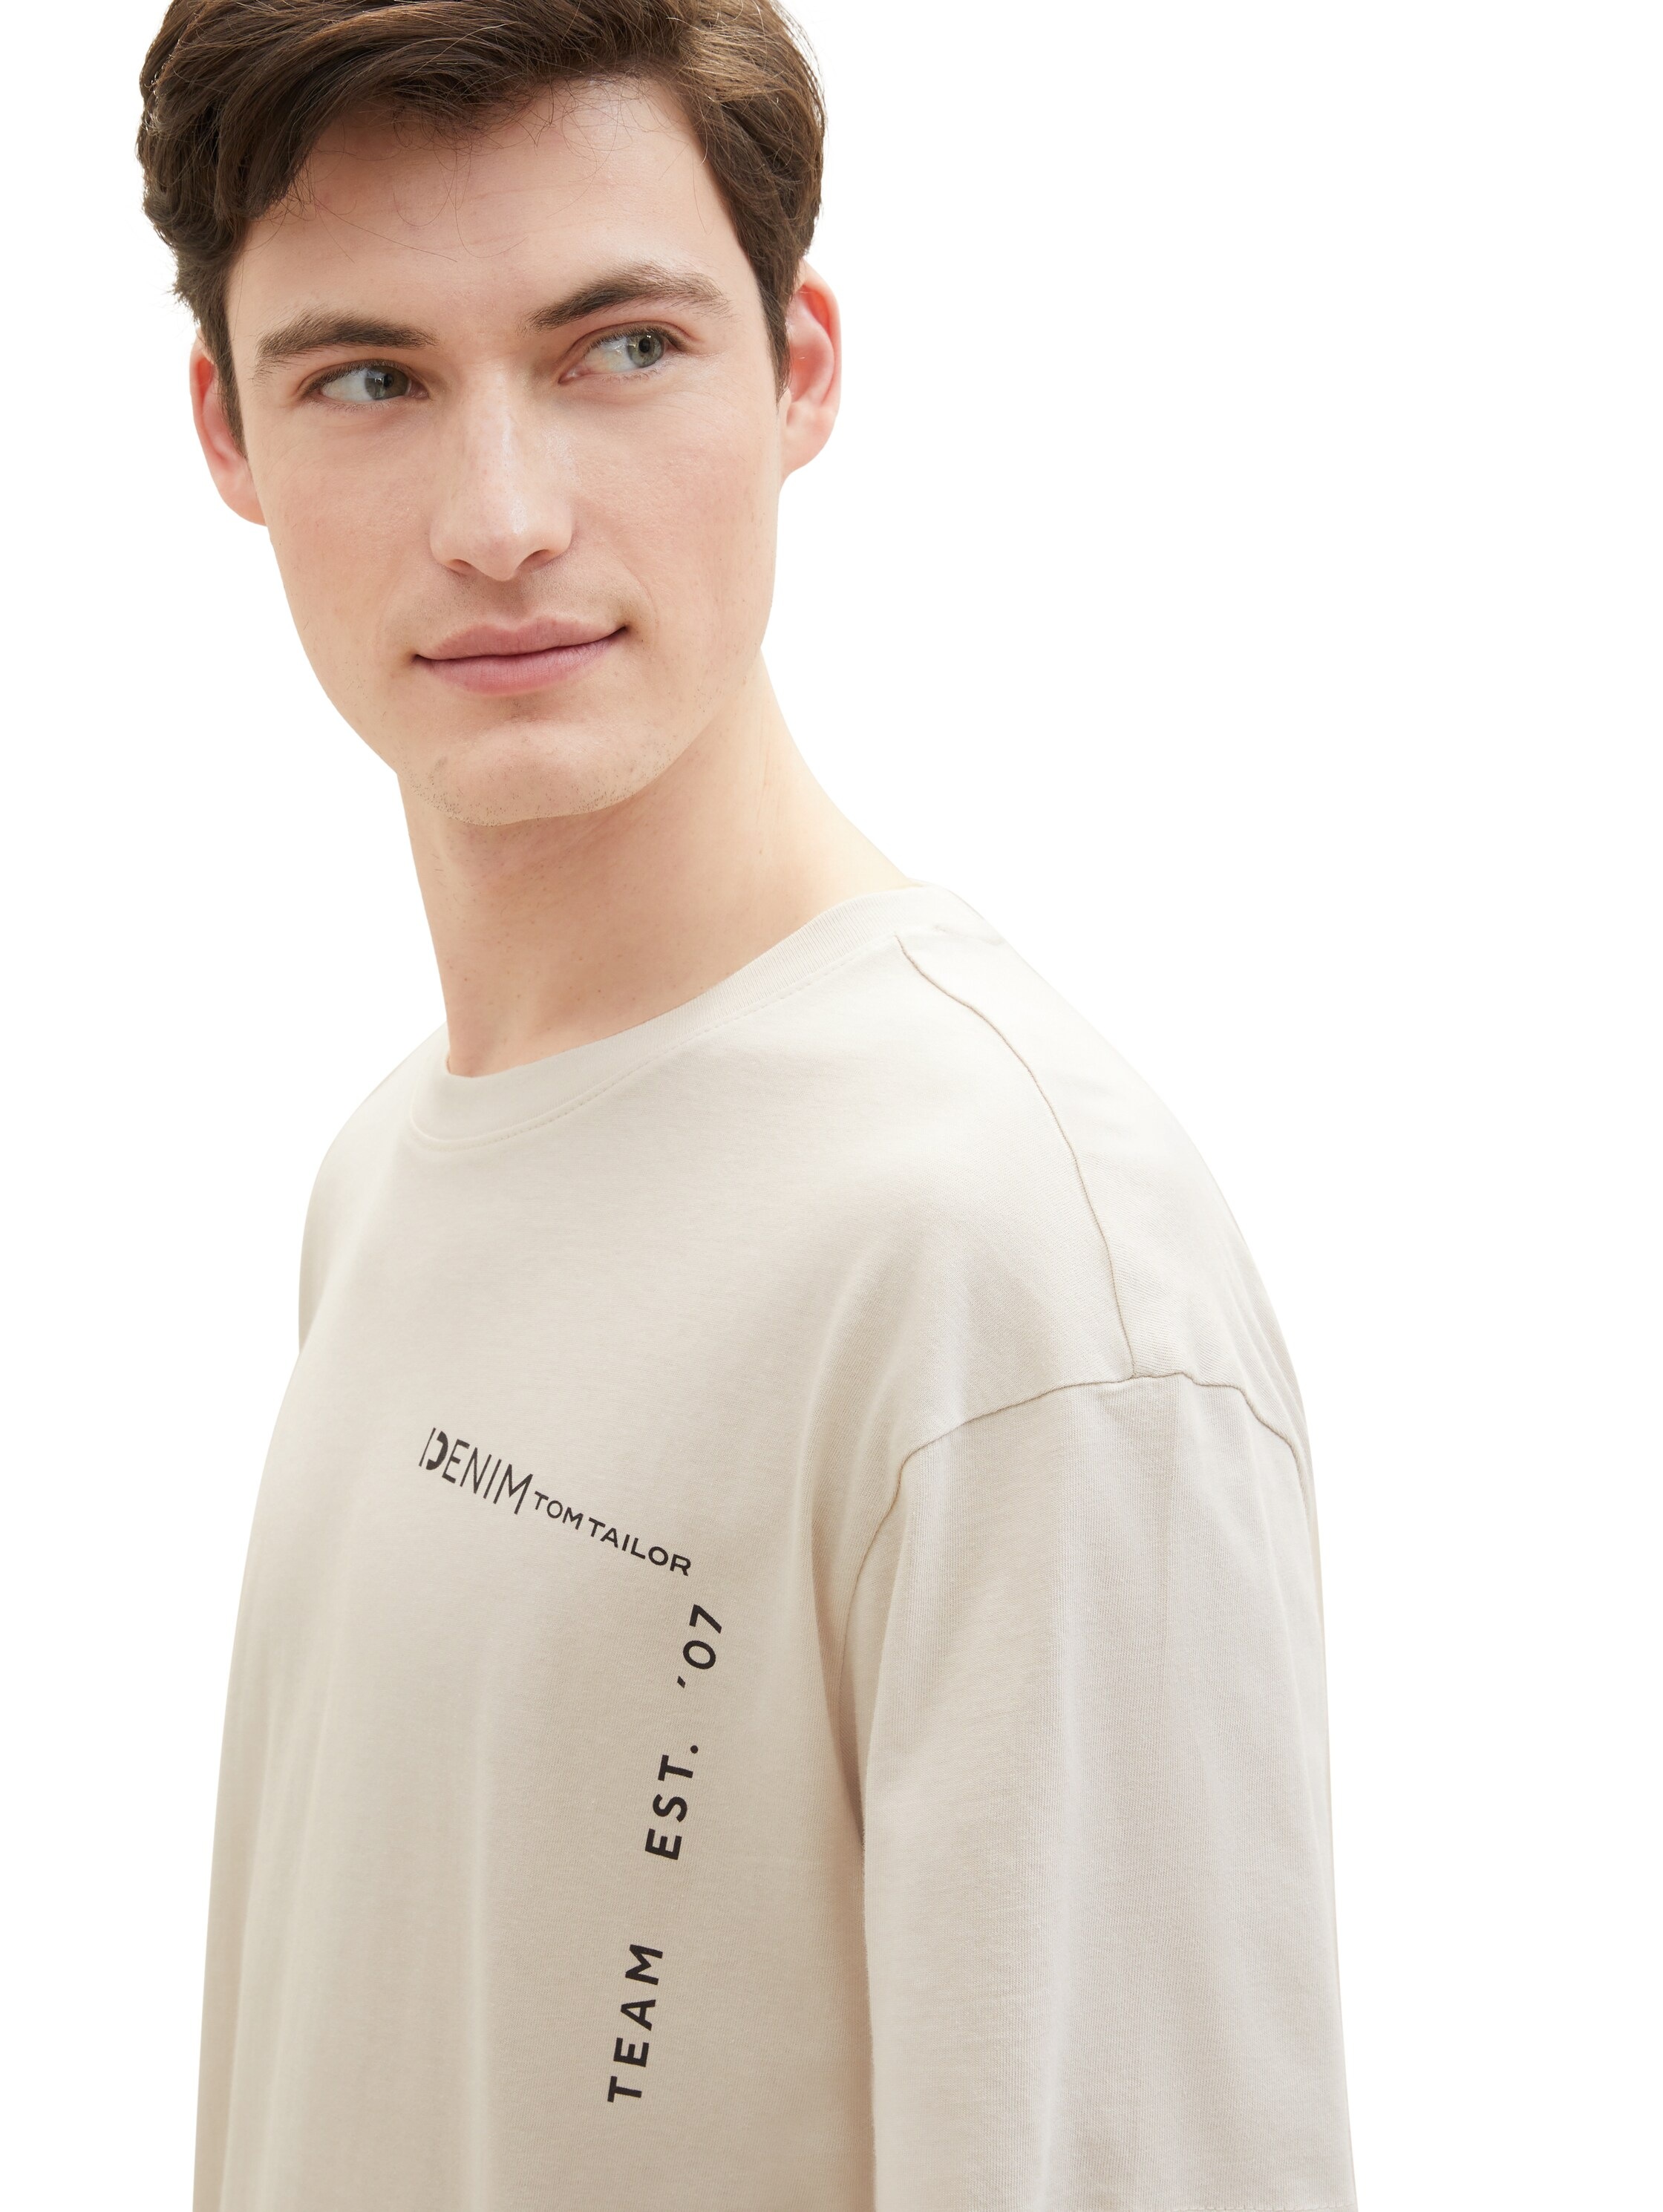 TOM TAILOR Denim T-Shirt, mit grossen Print auf dem Rücken